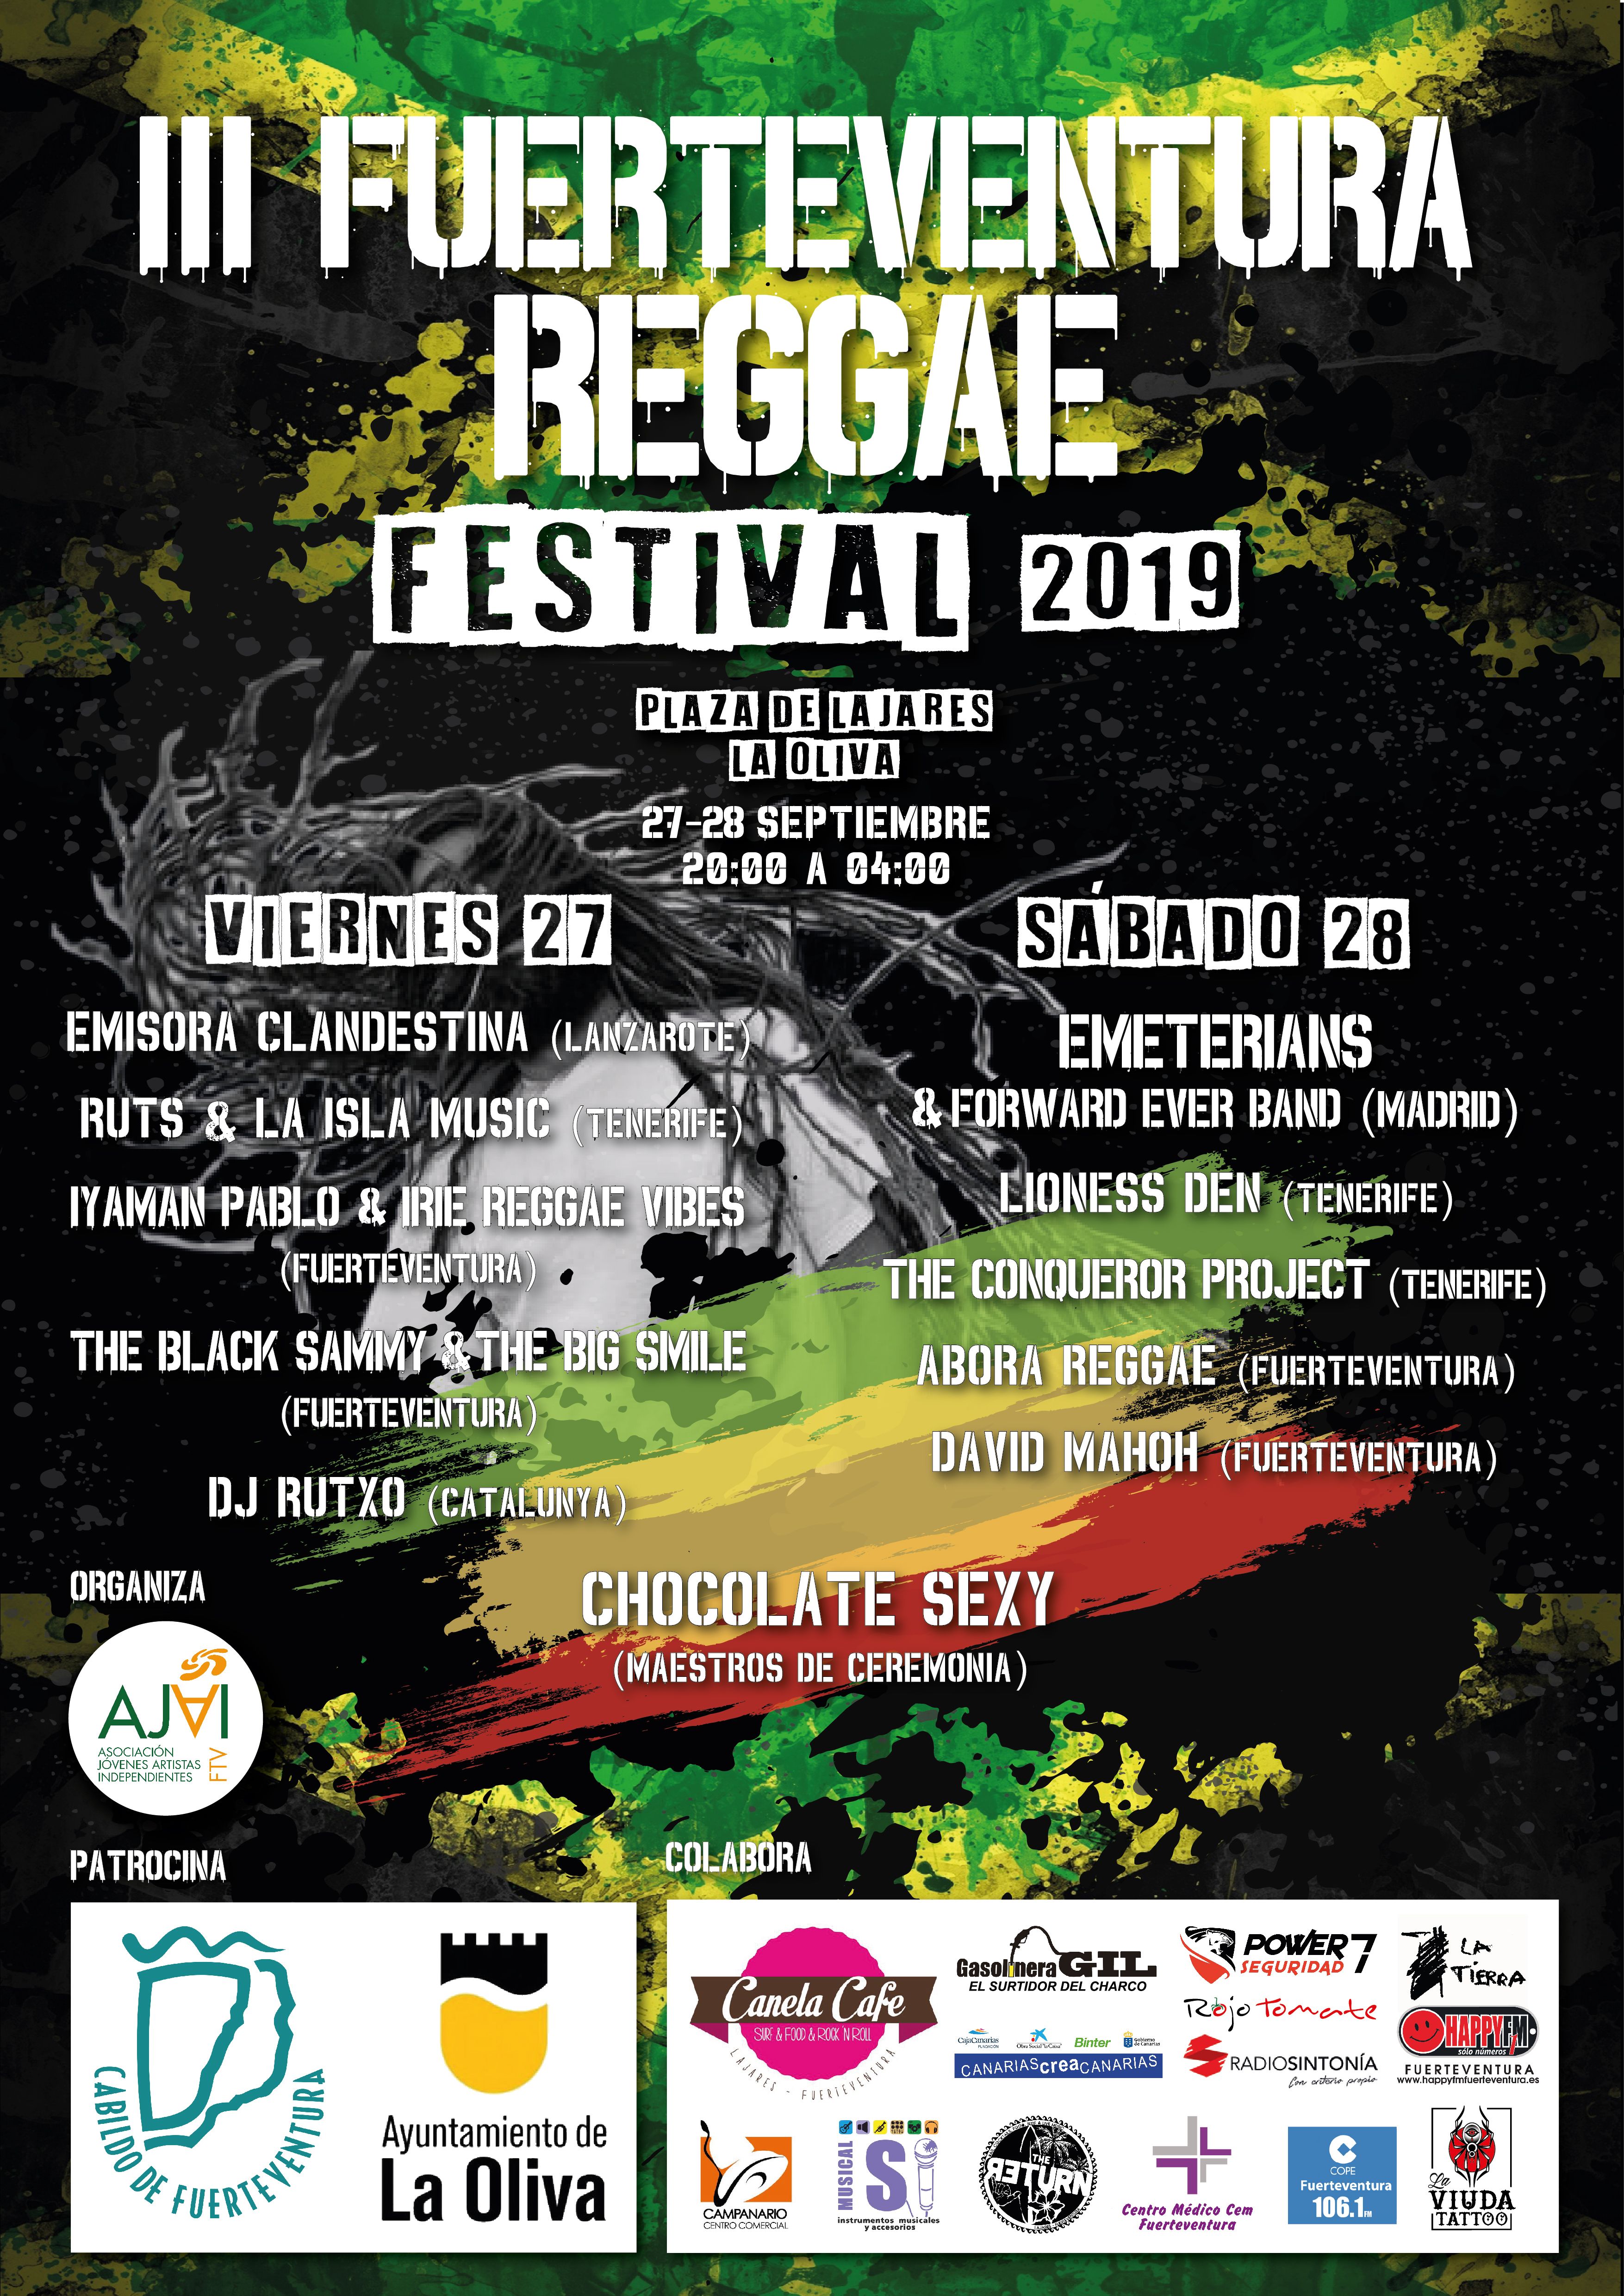 El III Fuerteventura Reggae Festival reunirá los mejores sonidos del